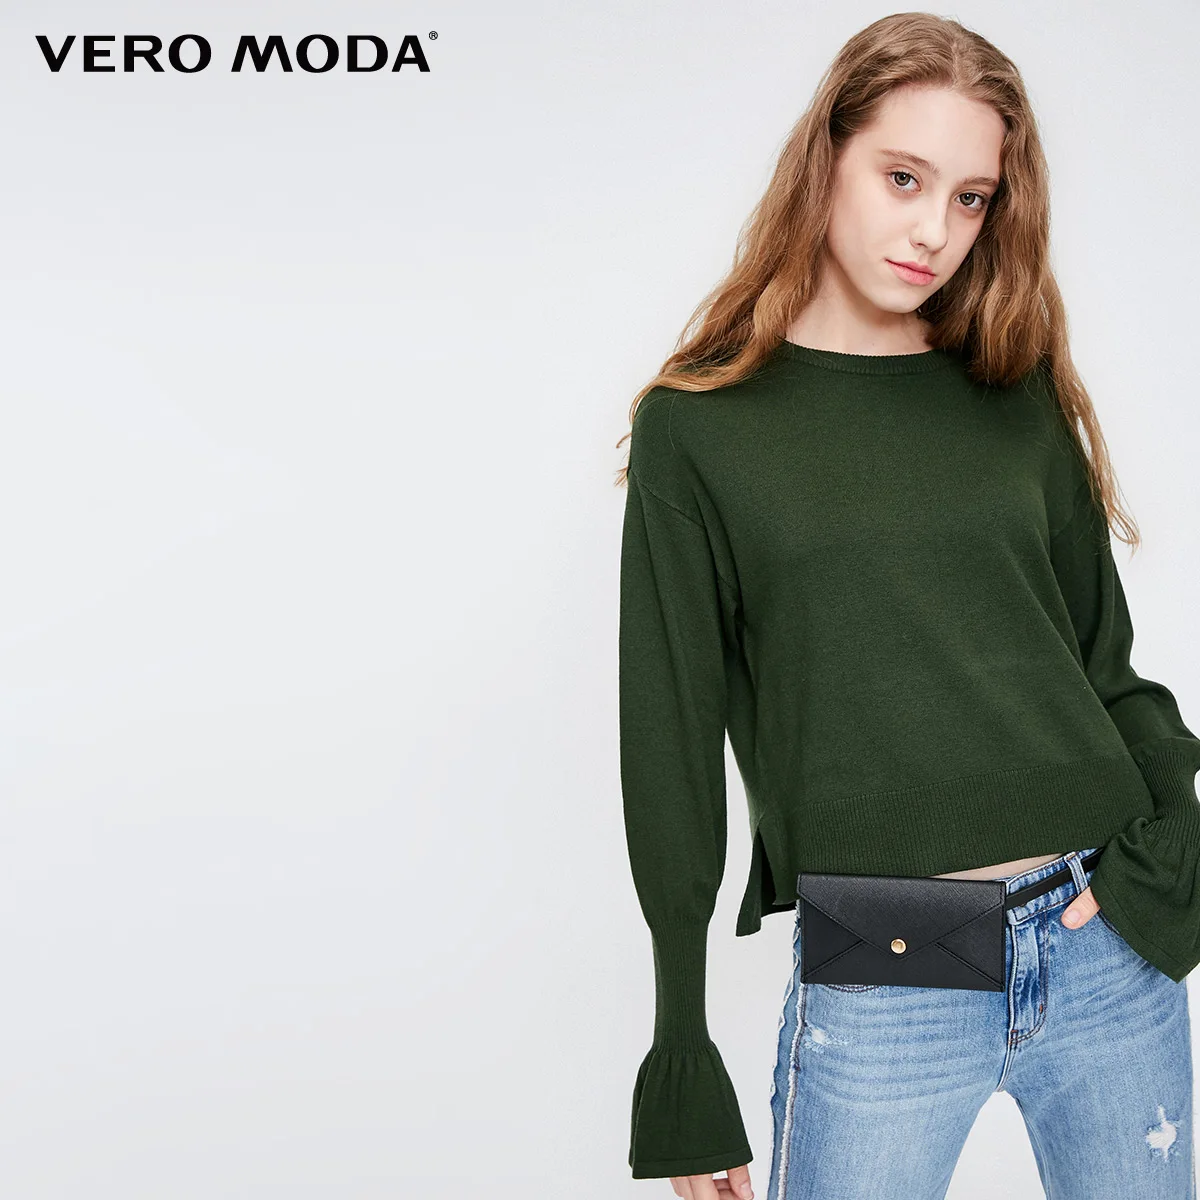 Vero Moda осенне-зимний вязаный свитер с расклешенными рукавами | 318324540 - Цвет: Dark safaris